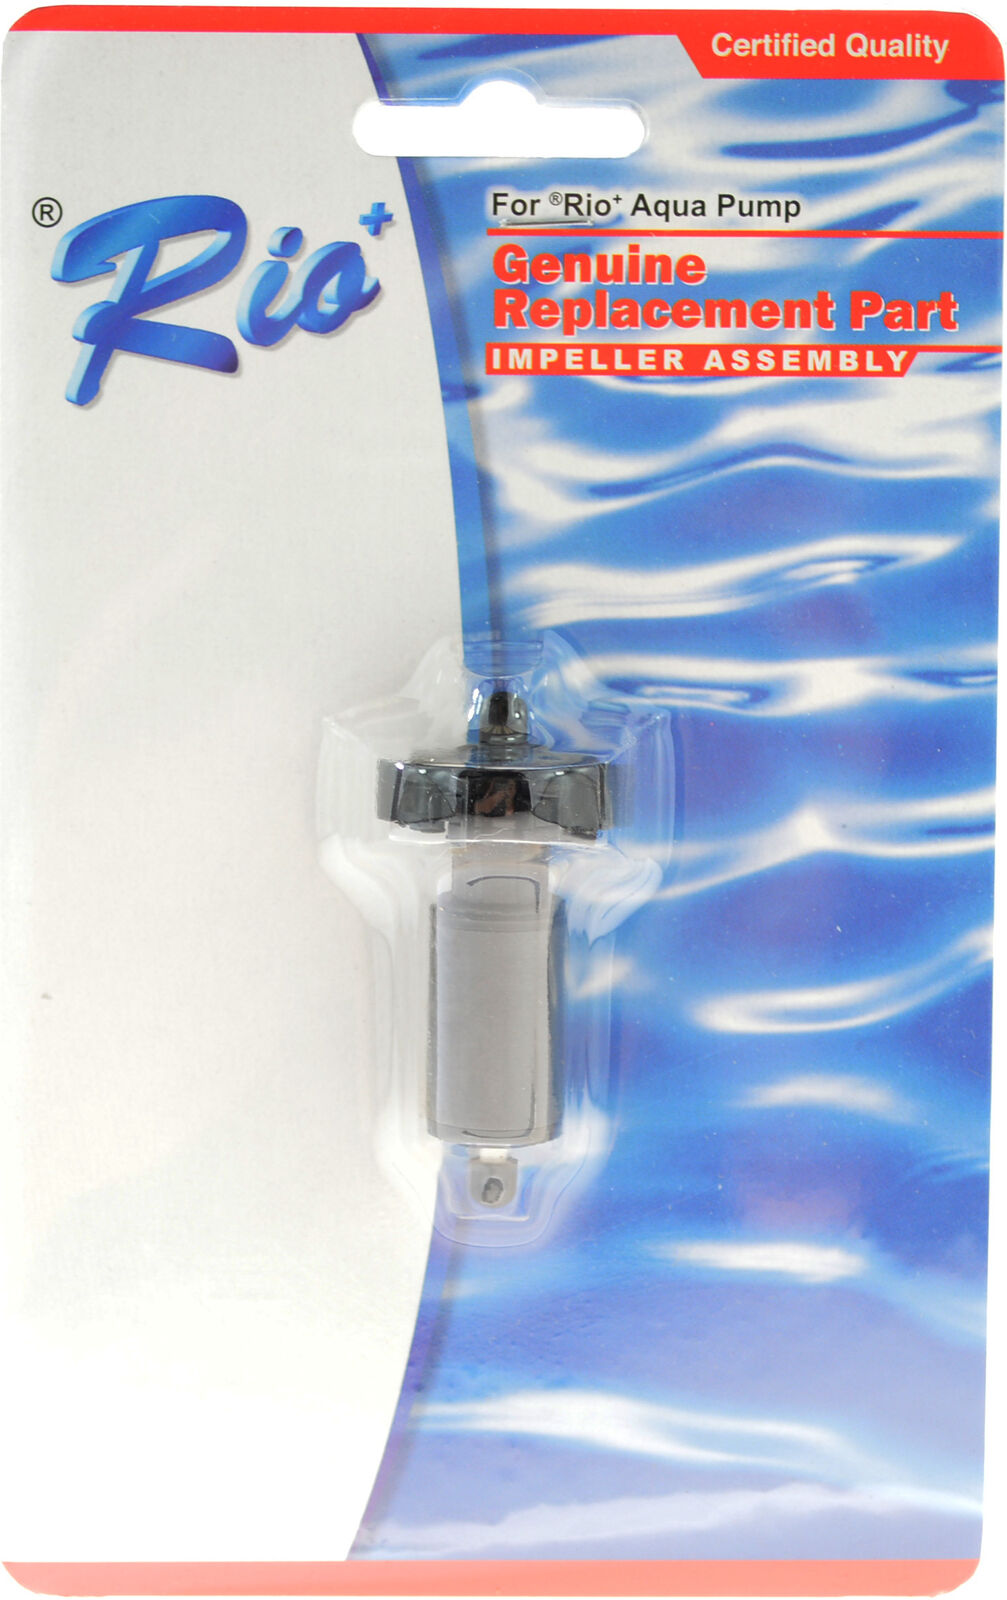 Rio Plus Aqua Pump Replacement Impeller